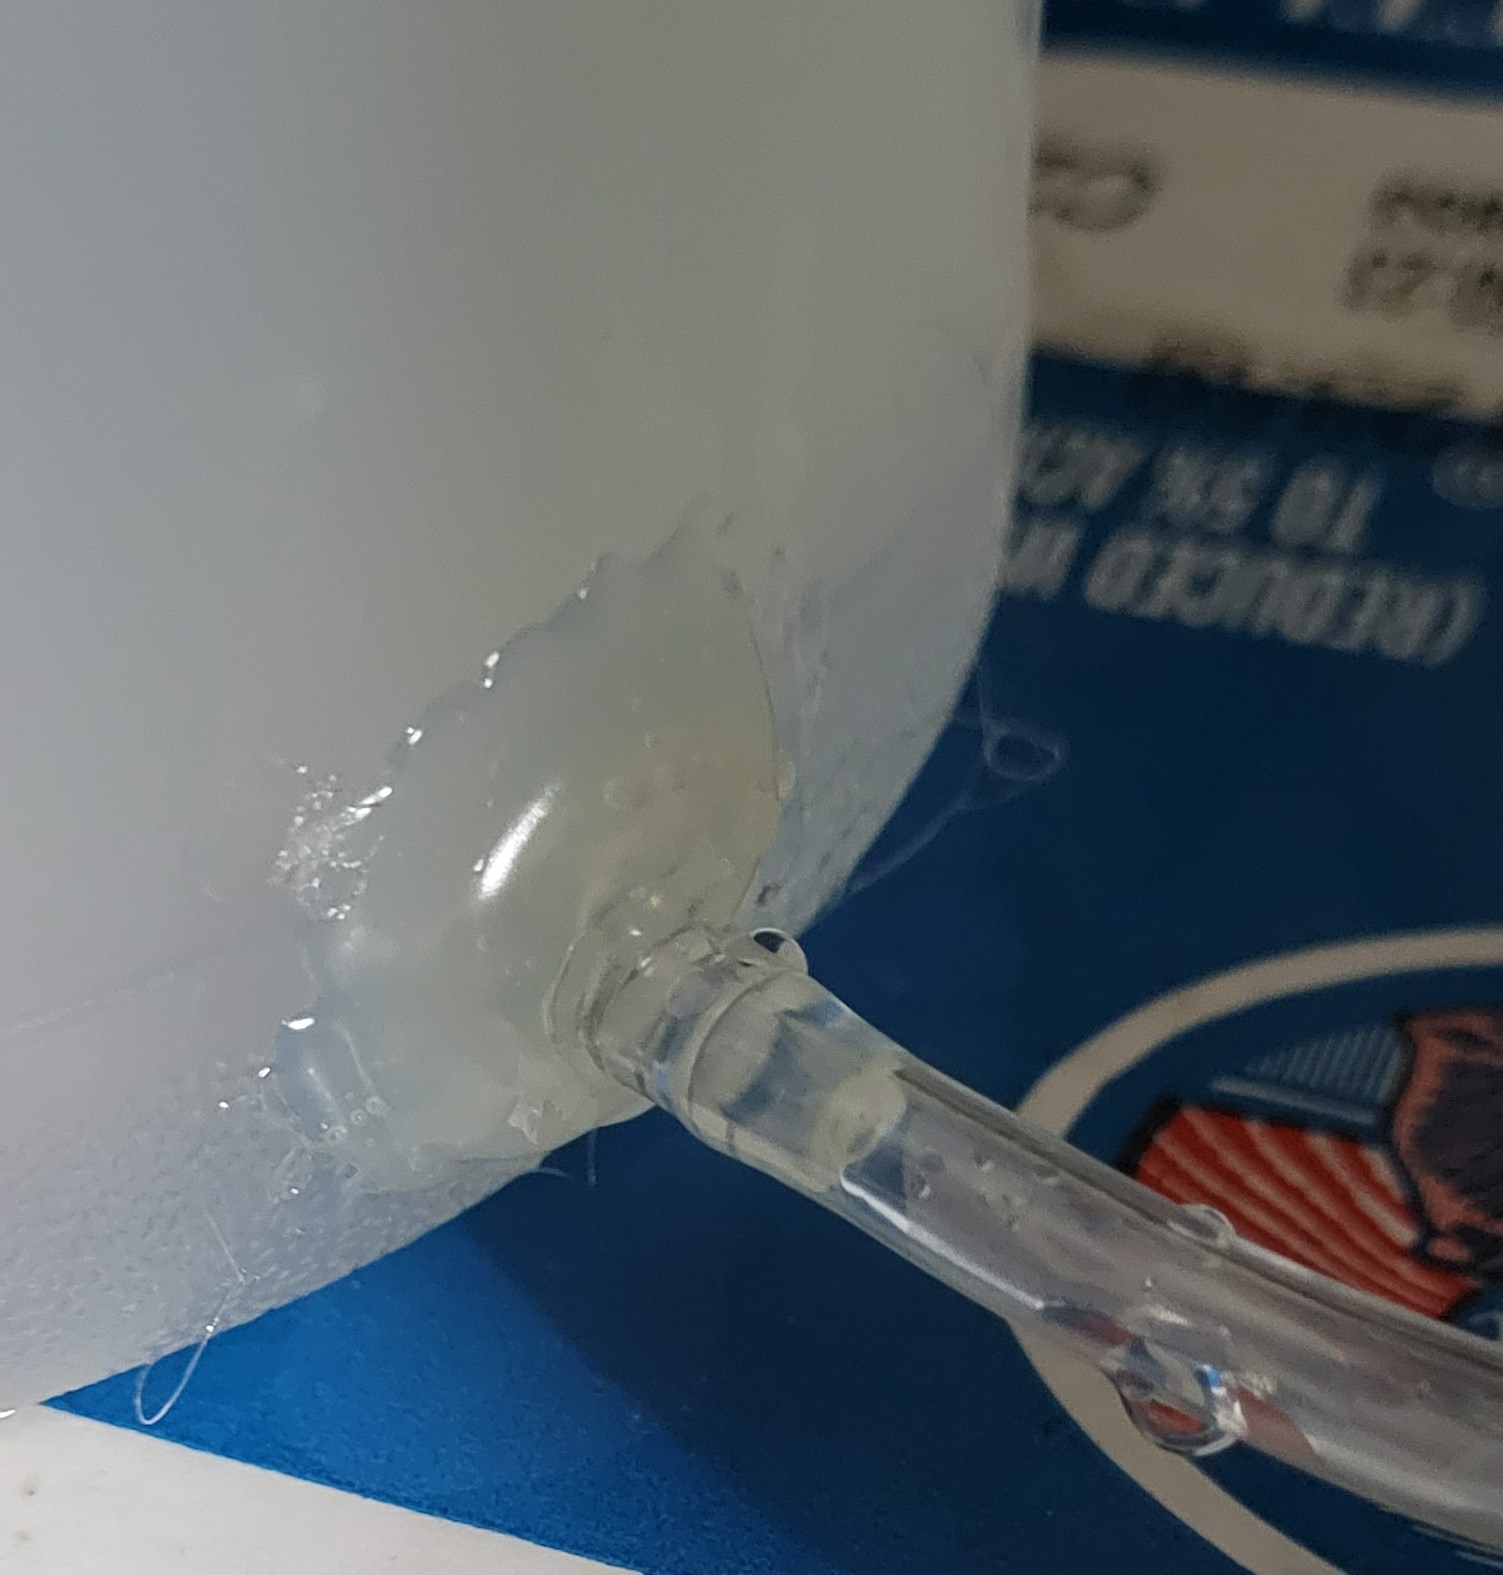 Plastic bottle fitting